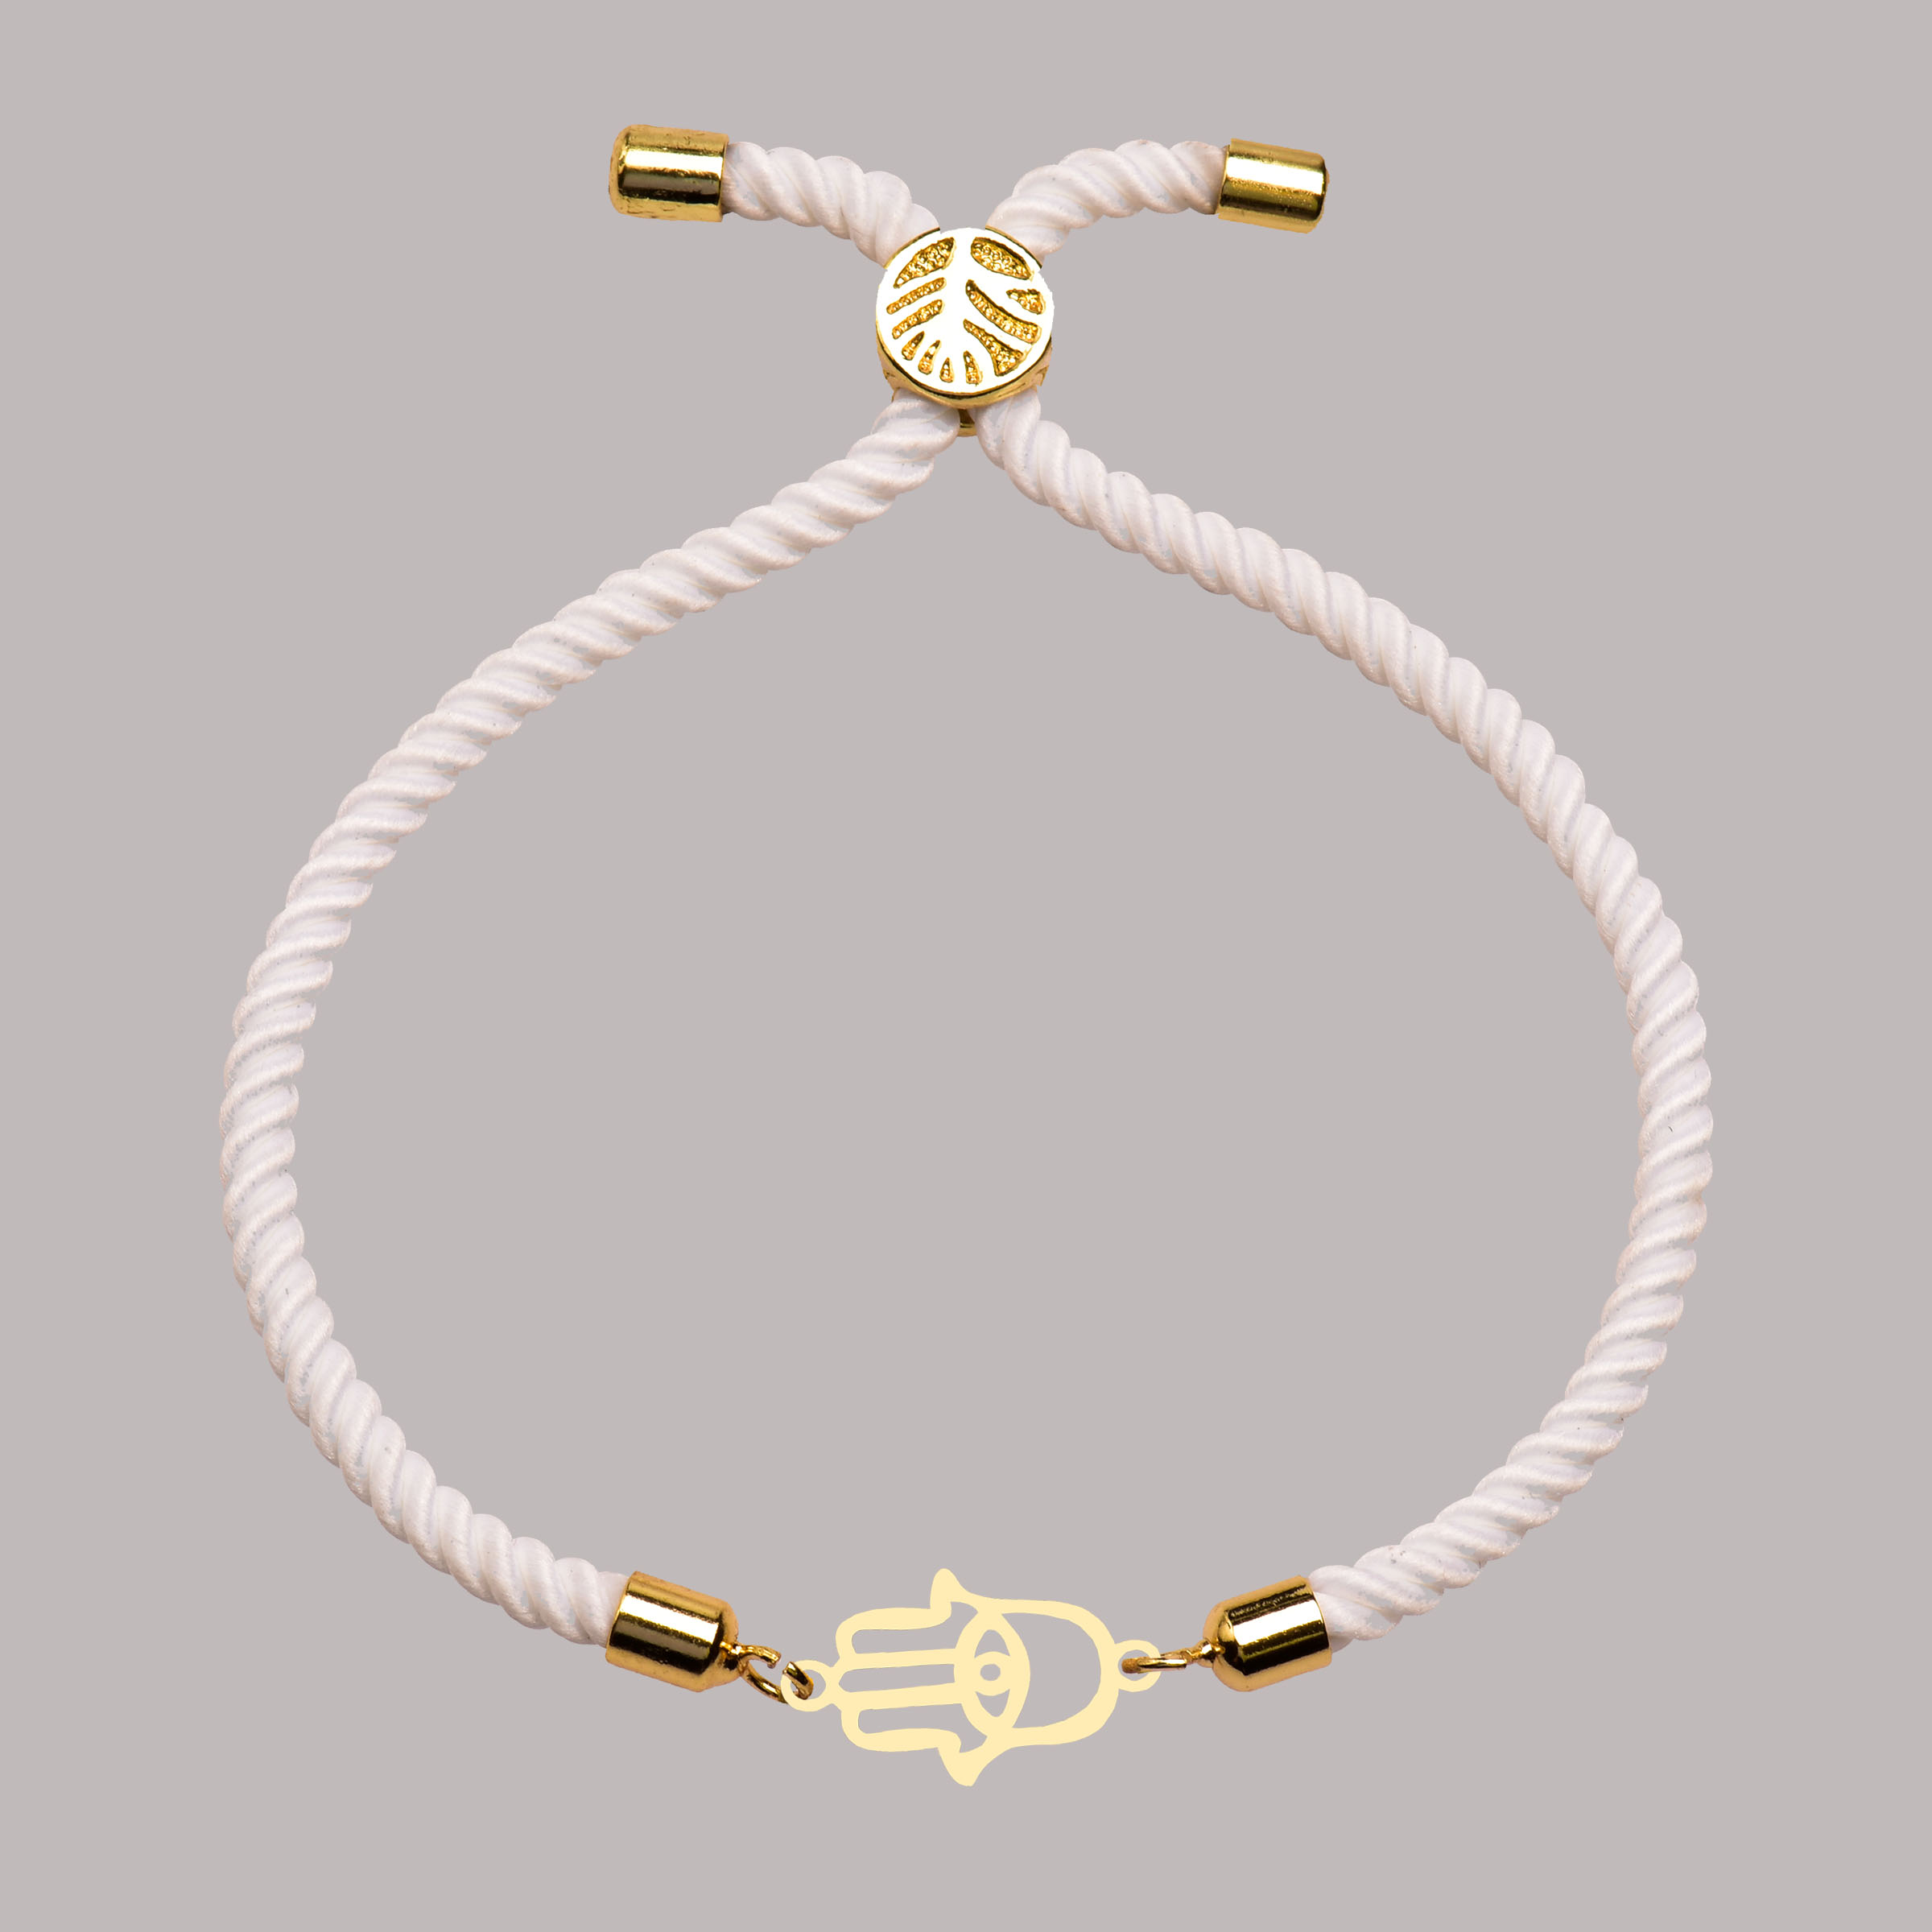 دستبند طلا 18 عیار زنانه کرابو طرح دست هما مدل Kr102239